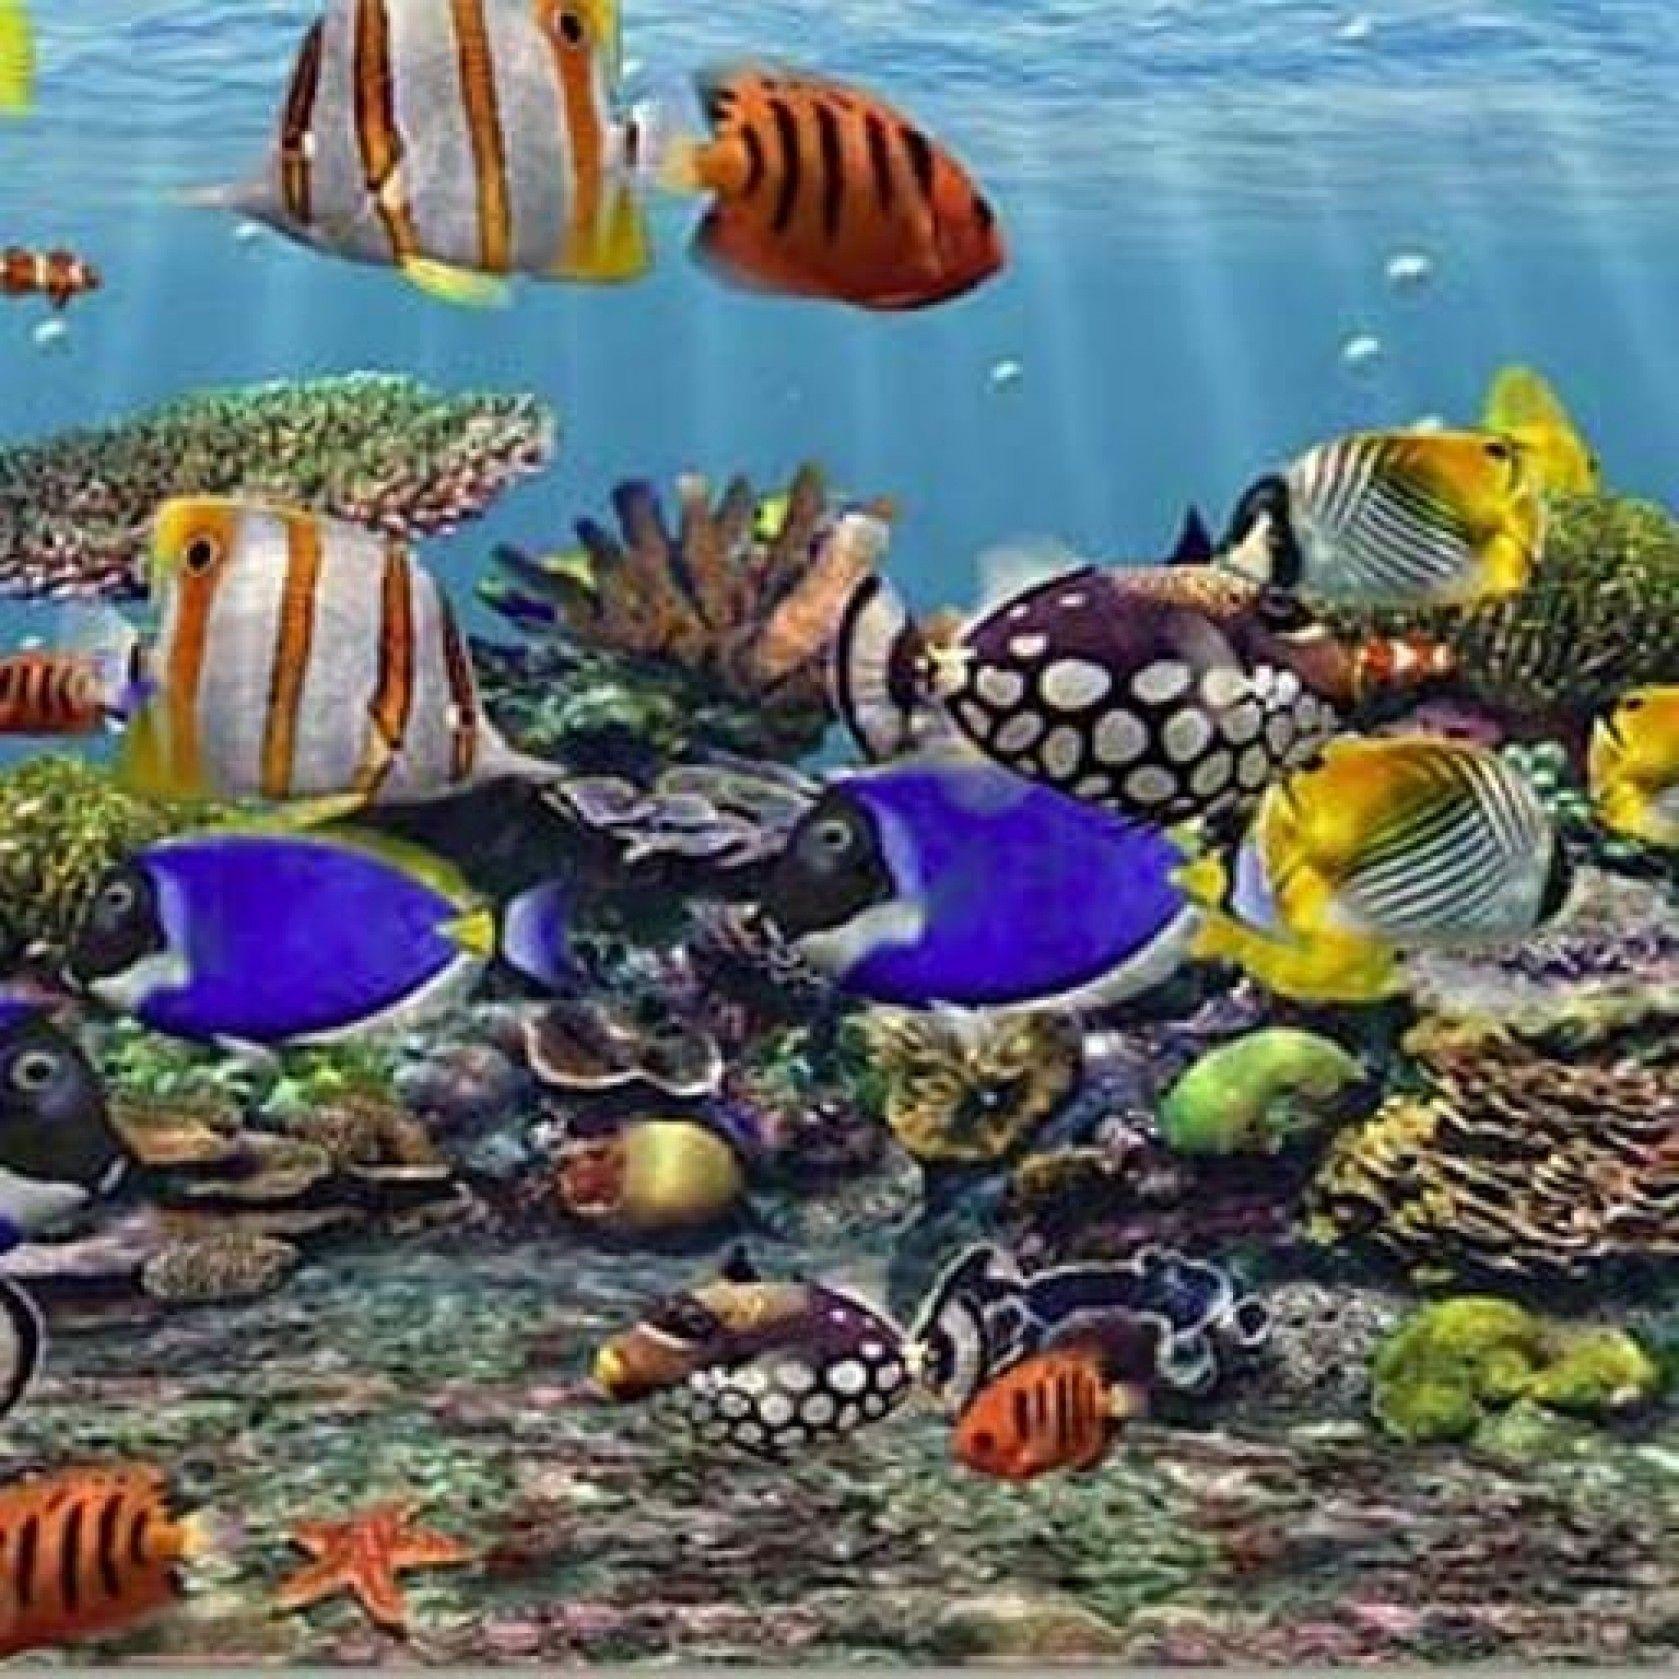 3d Wallpaper Fish Aquarium - Stone With Fish - HD Wallpaper 